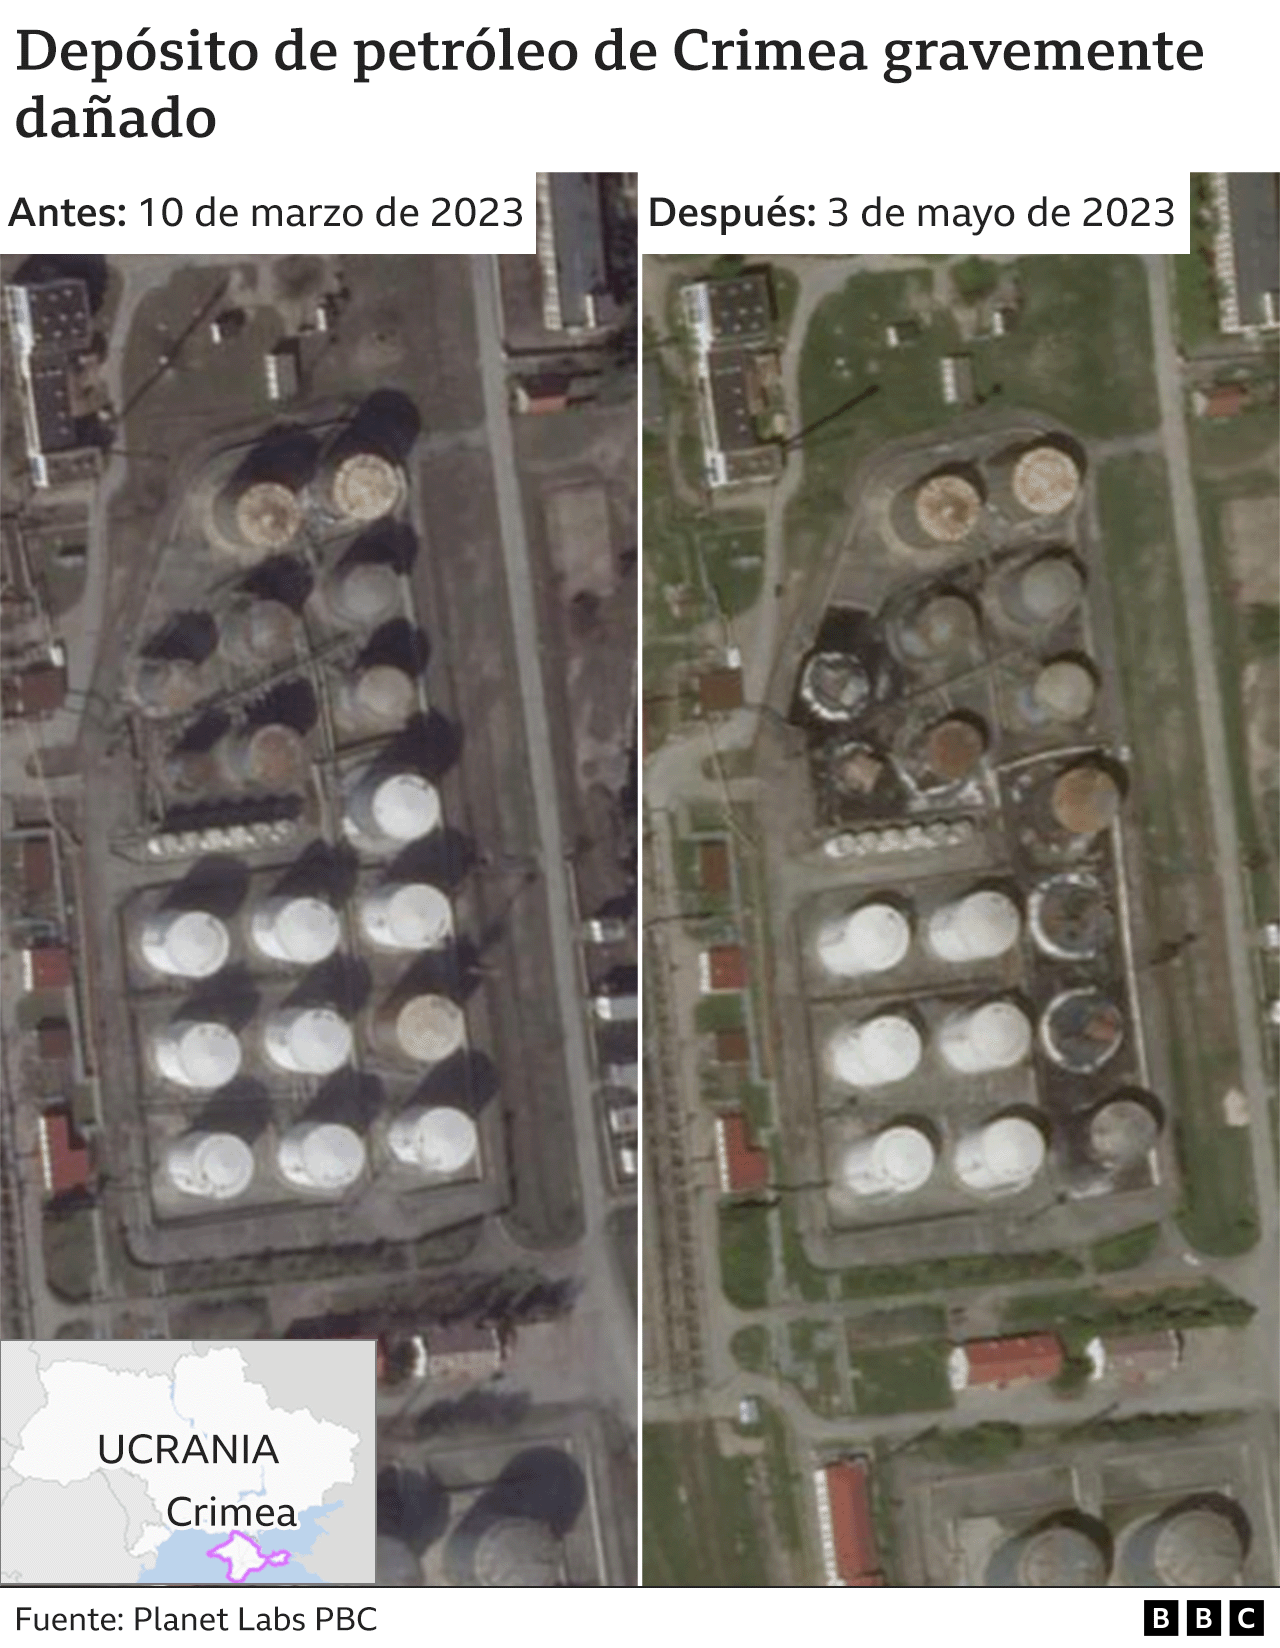 Imágenes superpuestas de los depósitos de combustible dañados en Crimea.